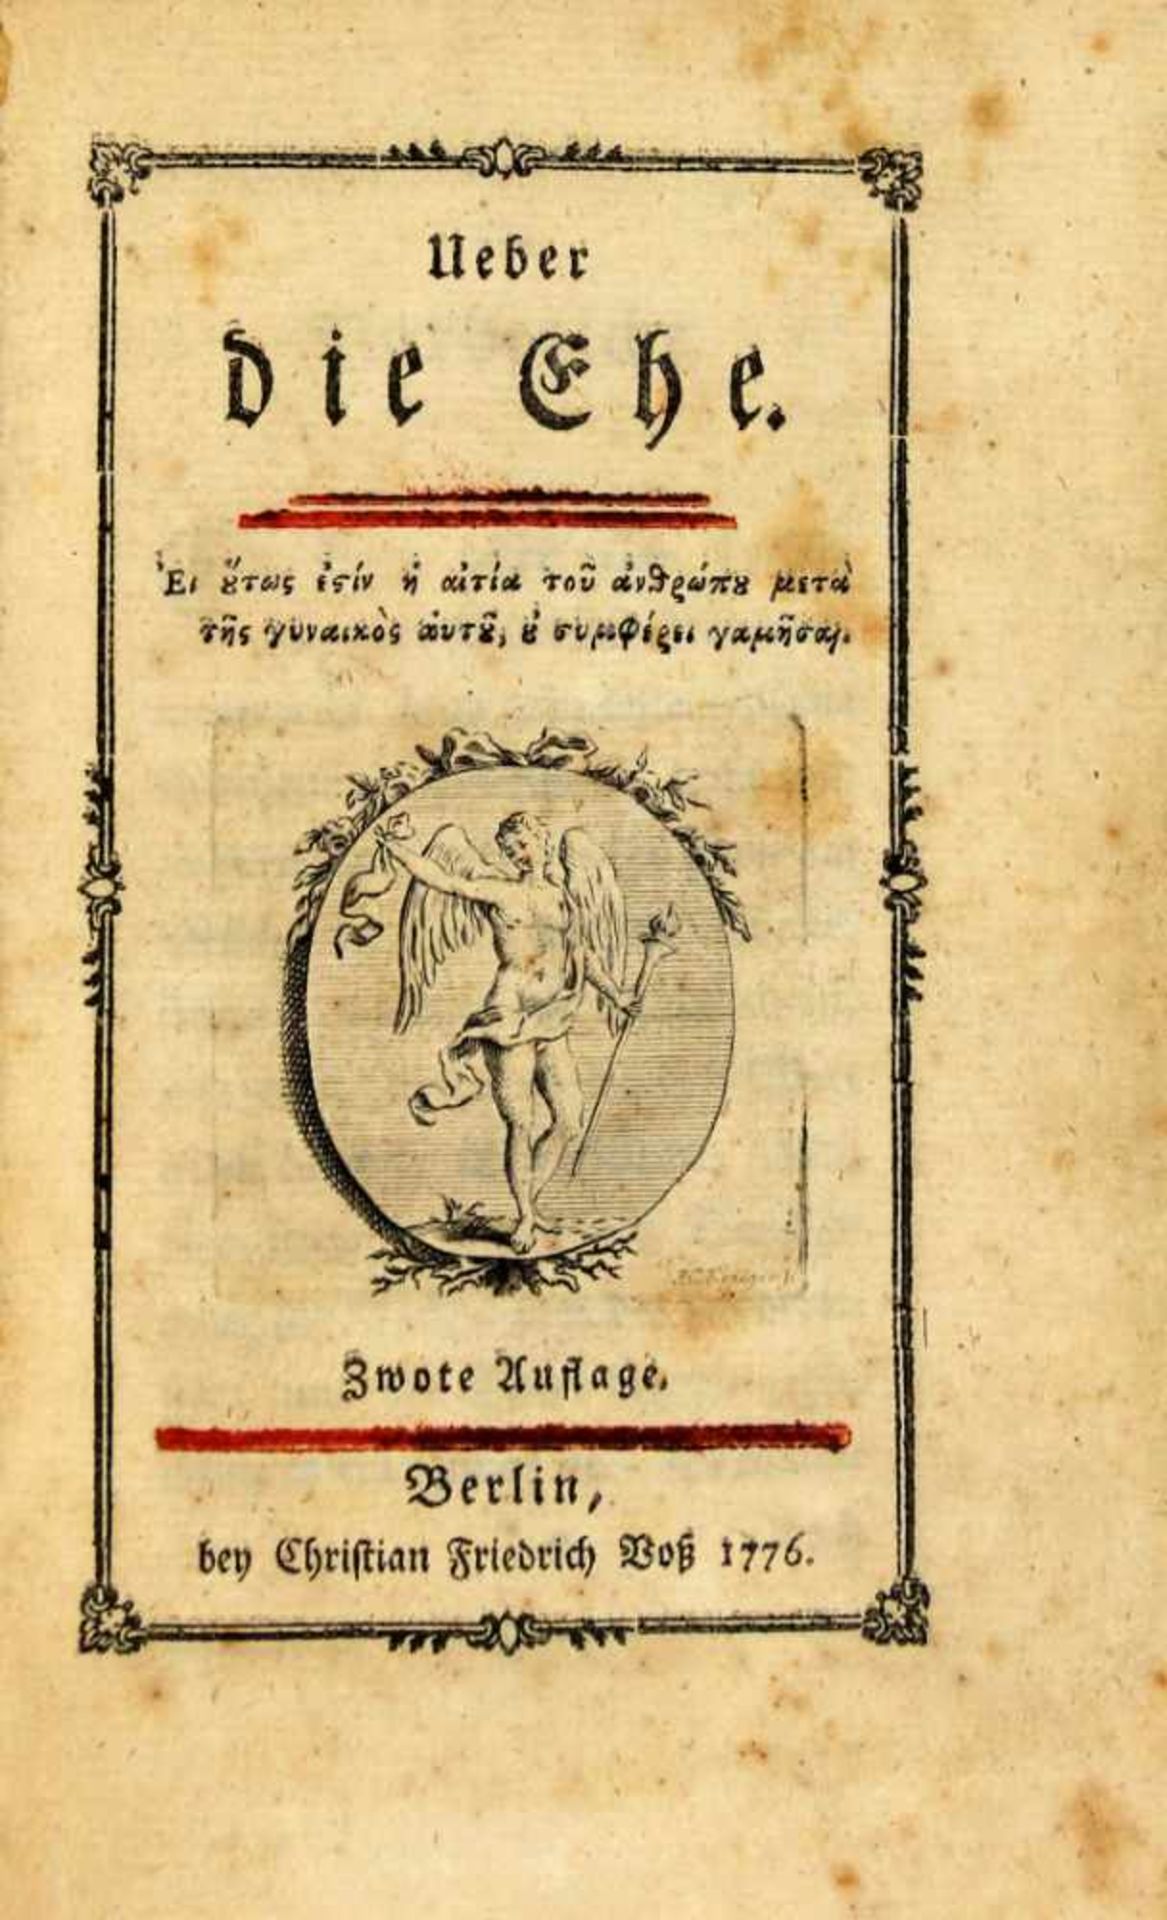 (Hippel, Theodor Gottlieb von):Ueber die Ehe. Zwote Auflage. Berlin, Christian Friedrich Voß 1776.